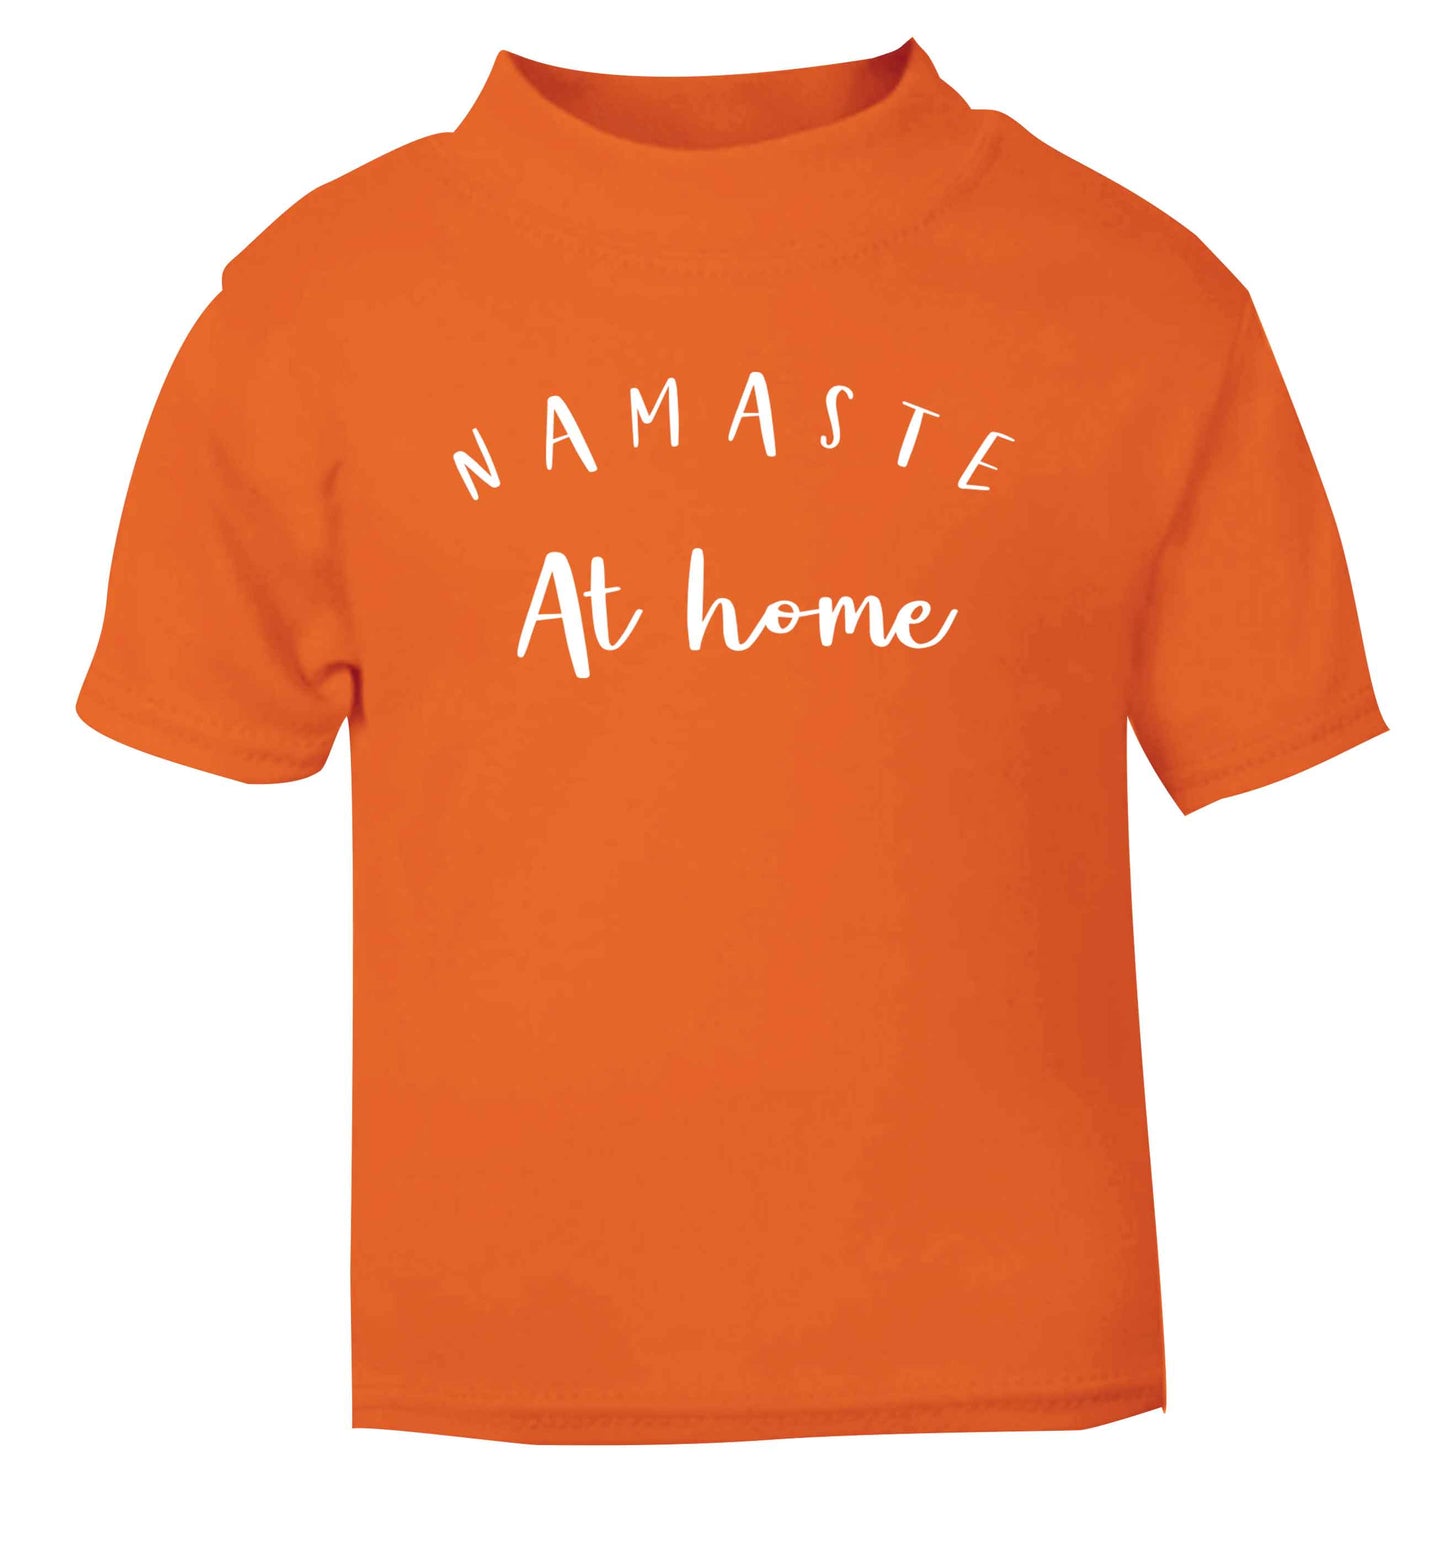 Namaste at home orange Baby Toddler Tshirt 2 Years